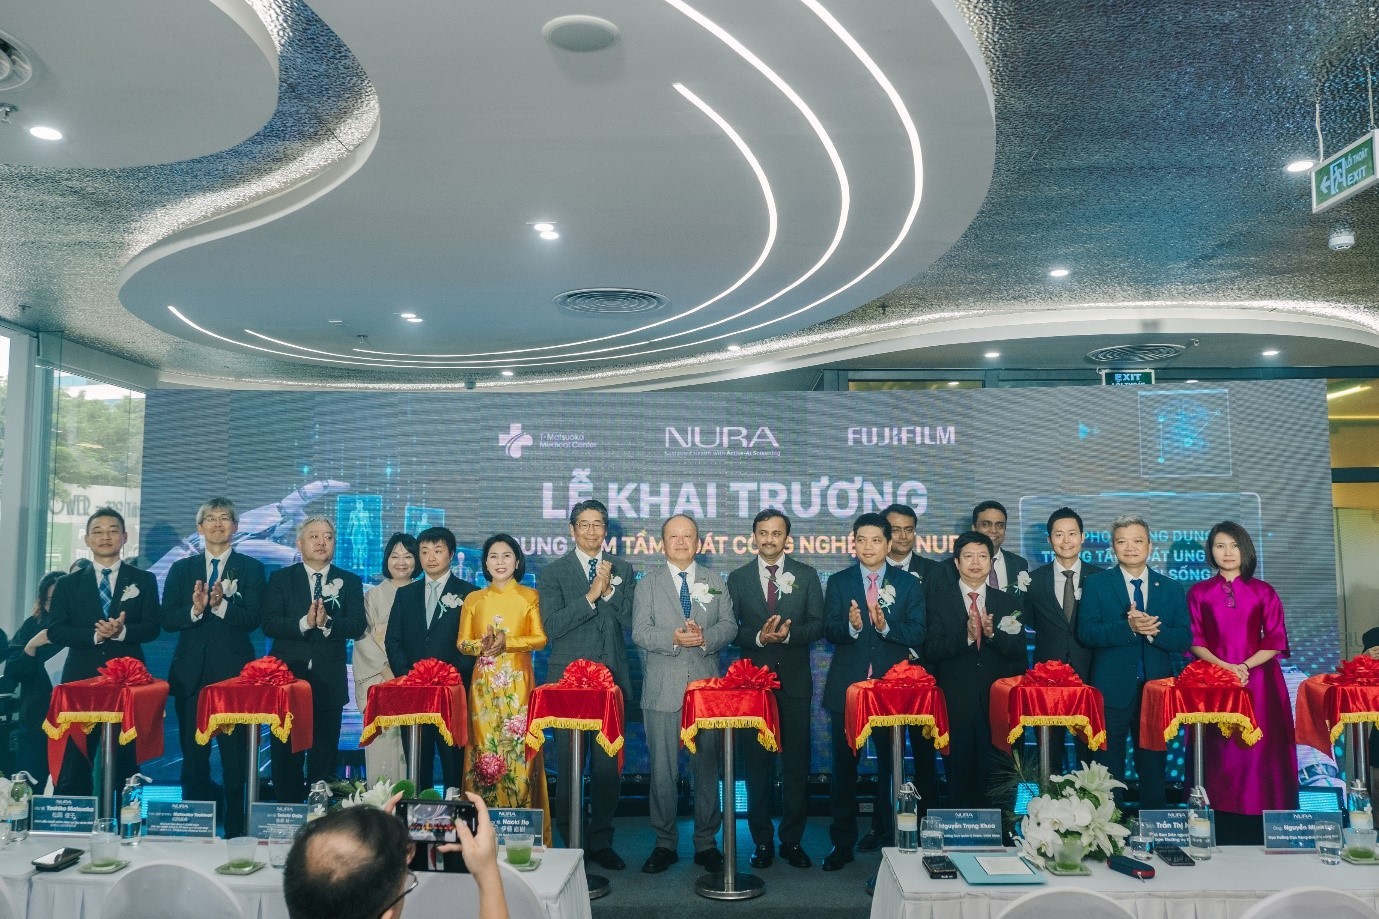 Khai trương Trung tâm Tầm soát công nghệ cao NURA tích hợp AI đầu tiên tại Đông Nam Á